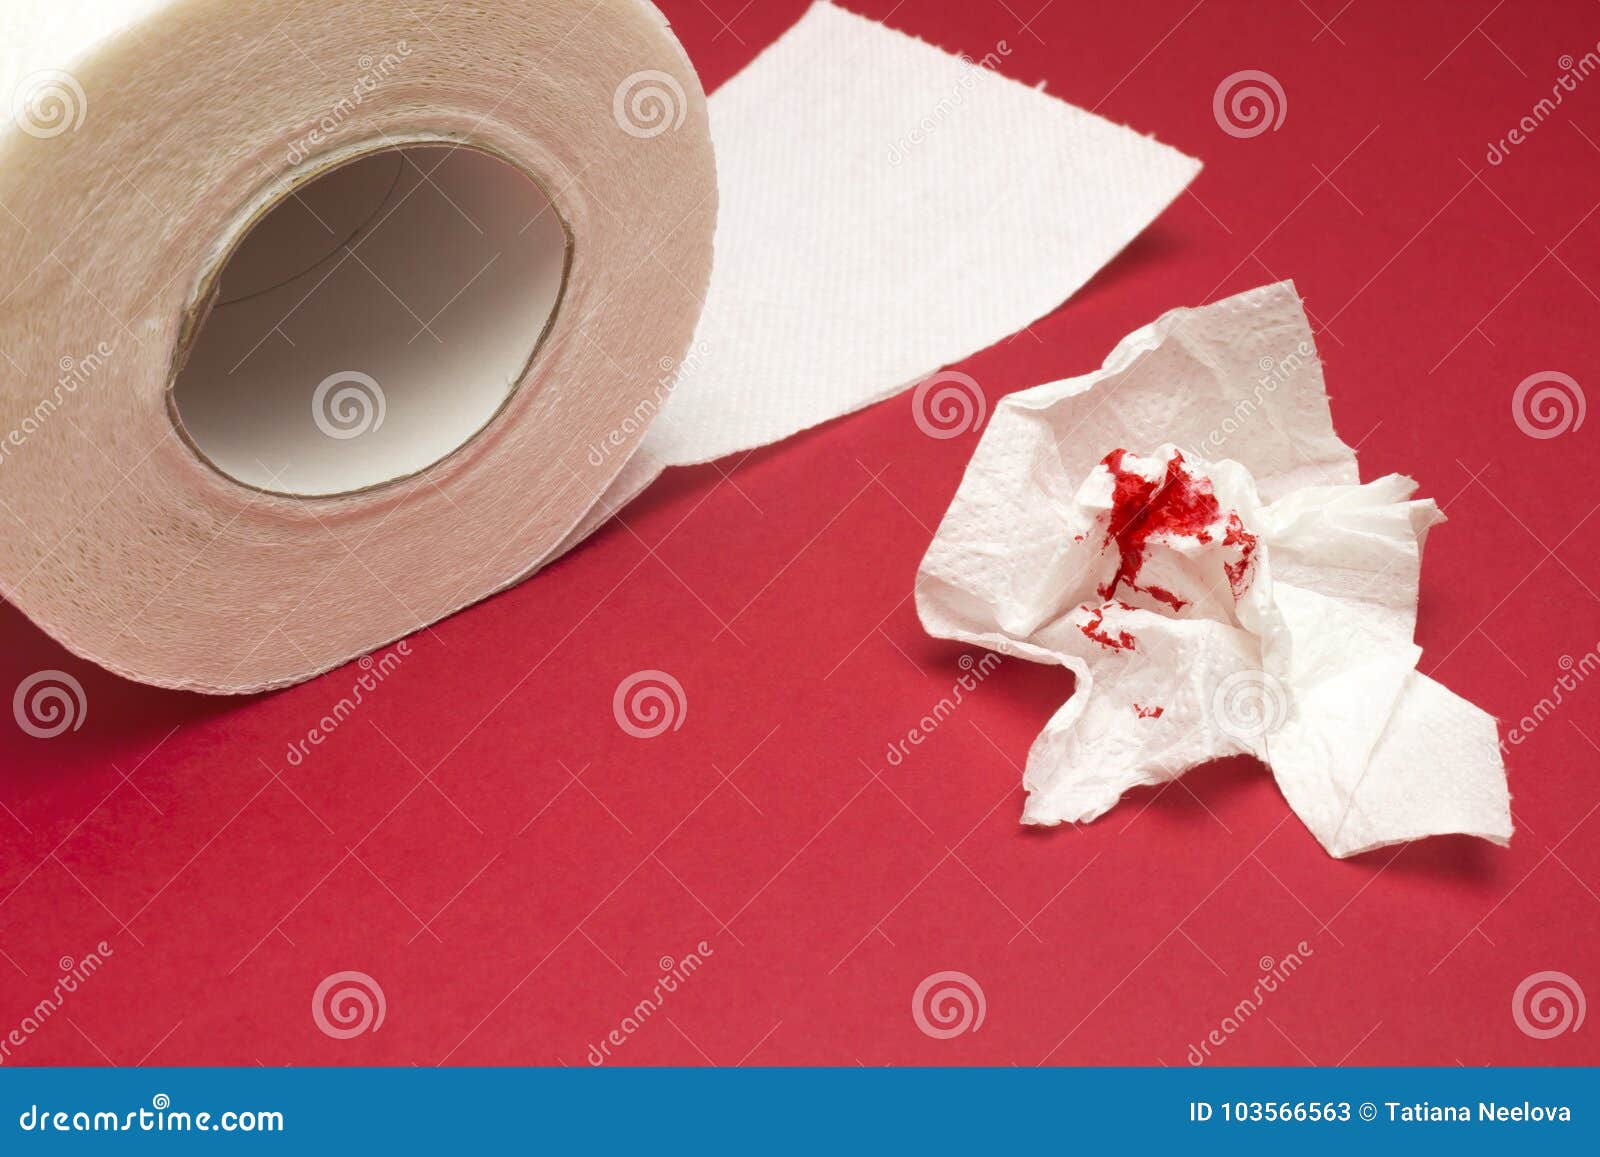 После туалета кровь на туалетной бумаге